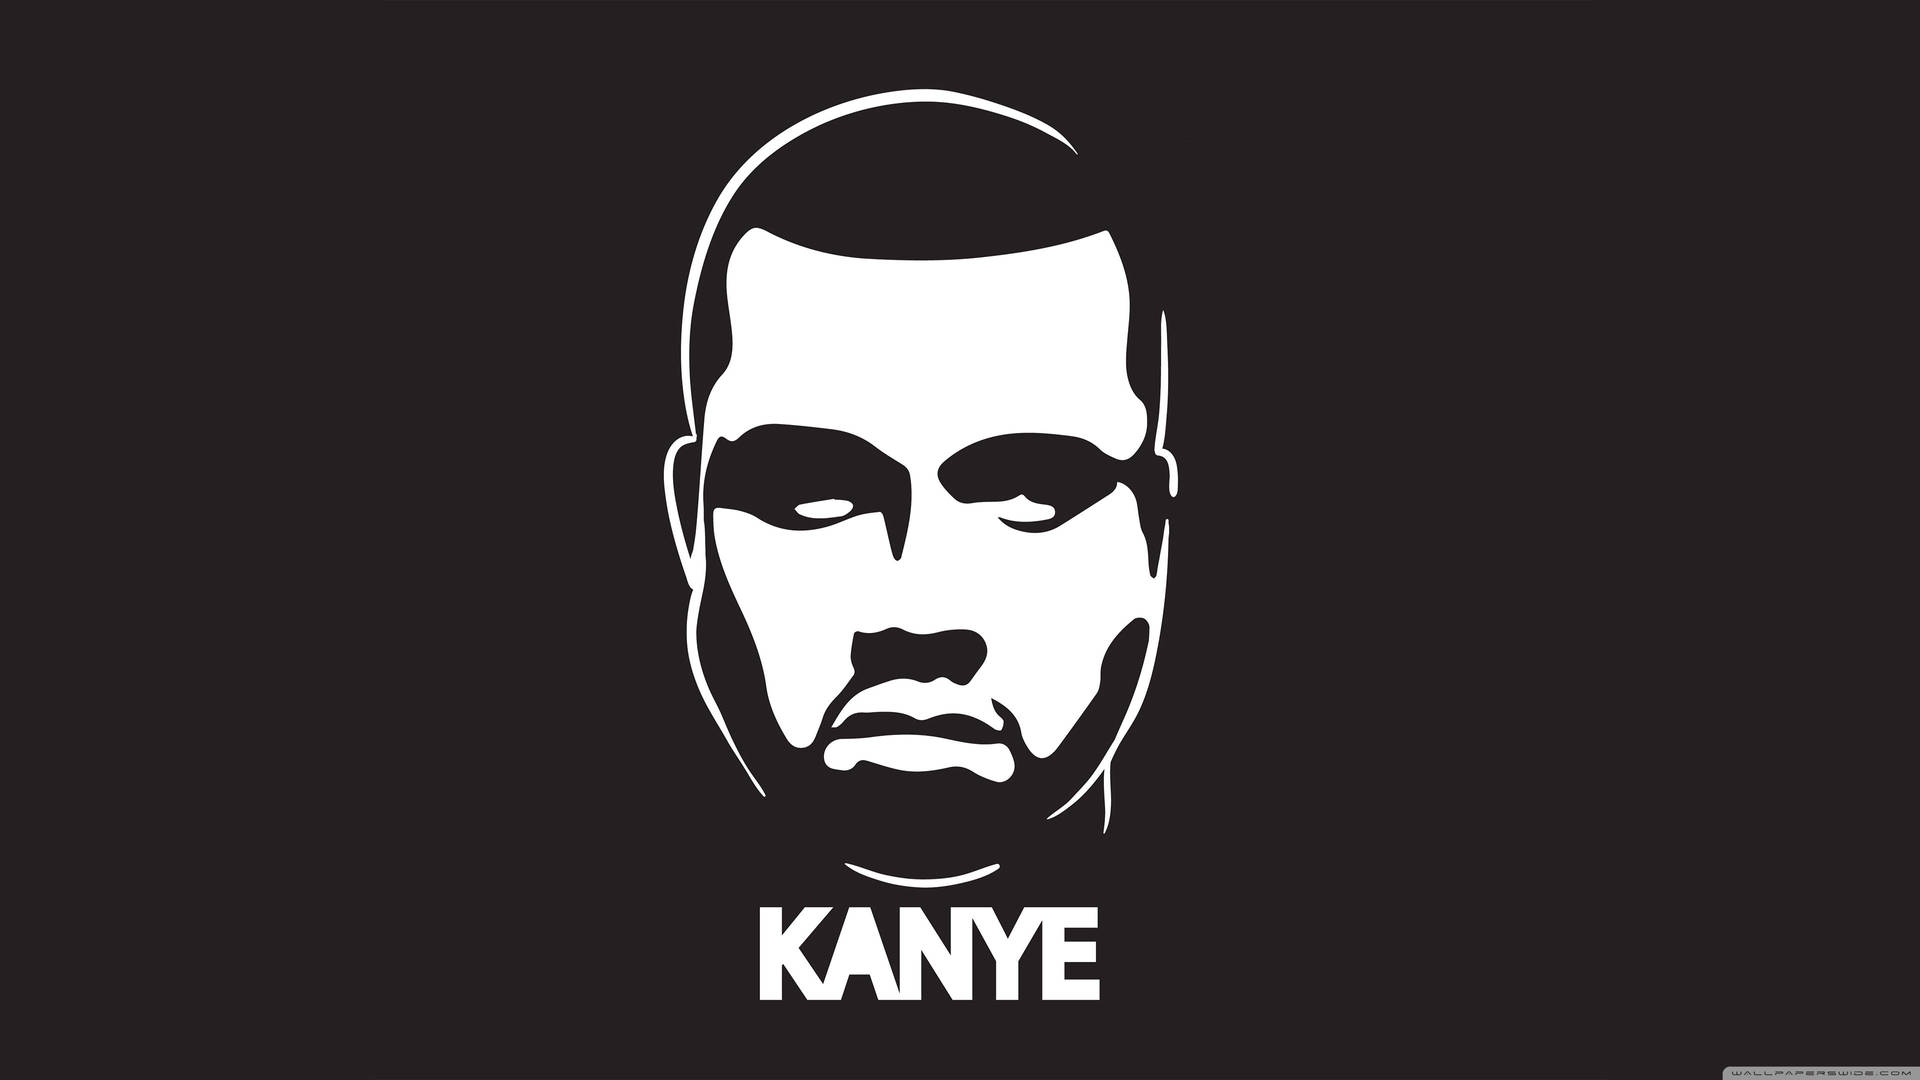 Kanye West Minimalistic Logo Background